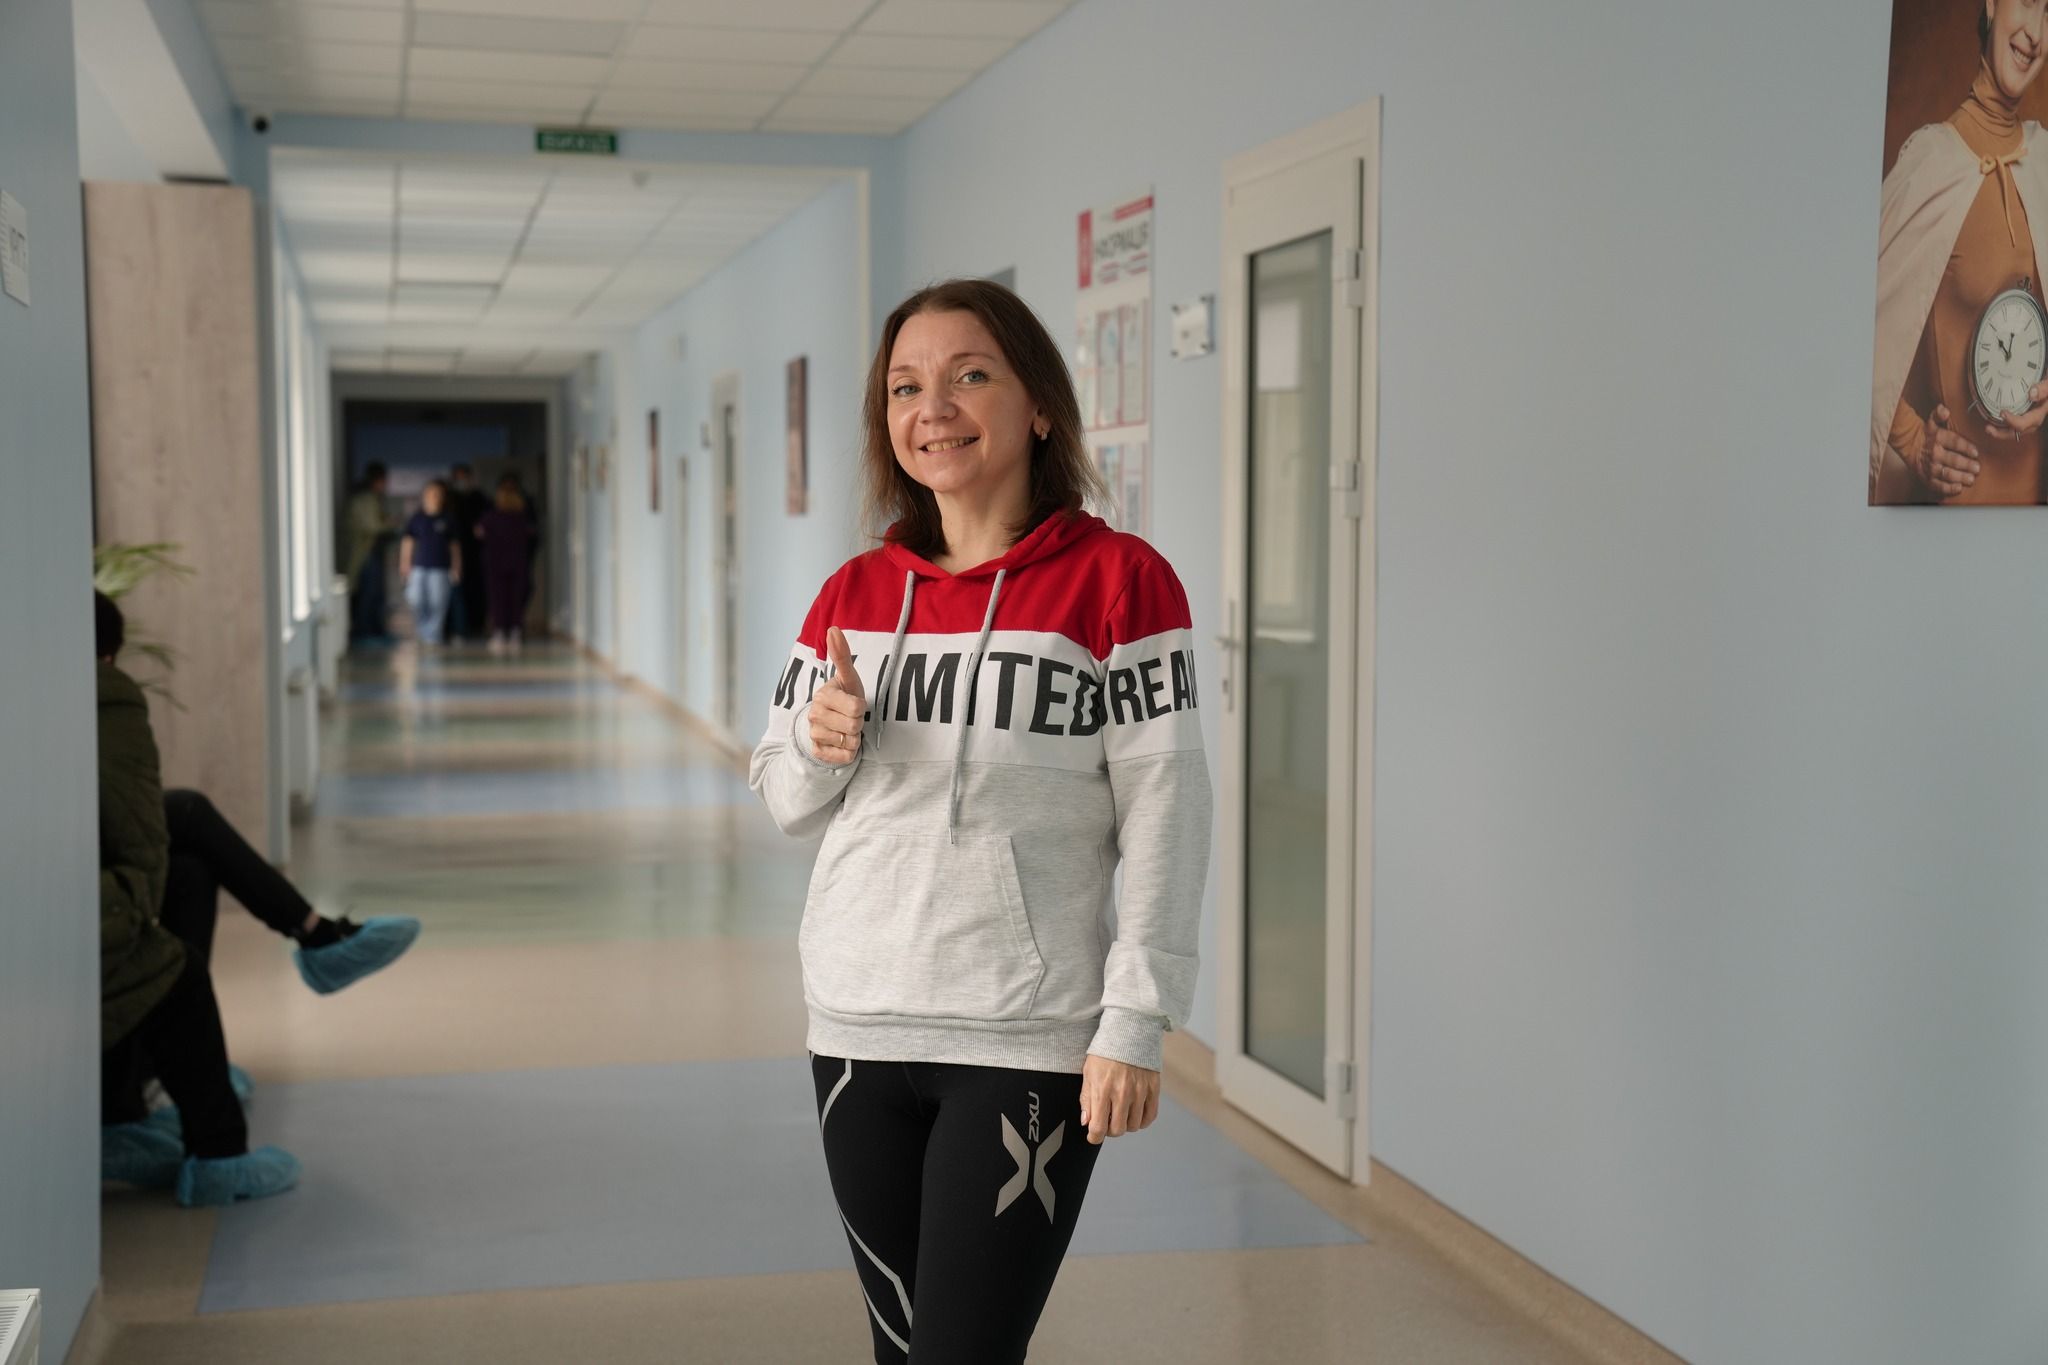 Четверта нирка: у Львові 39-річній жінці зробили унікальну операцію, фото